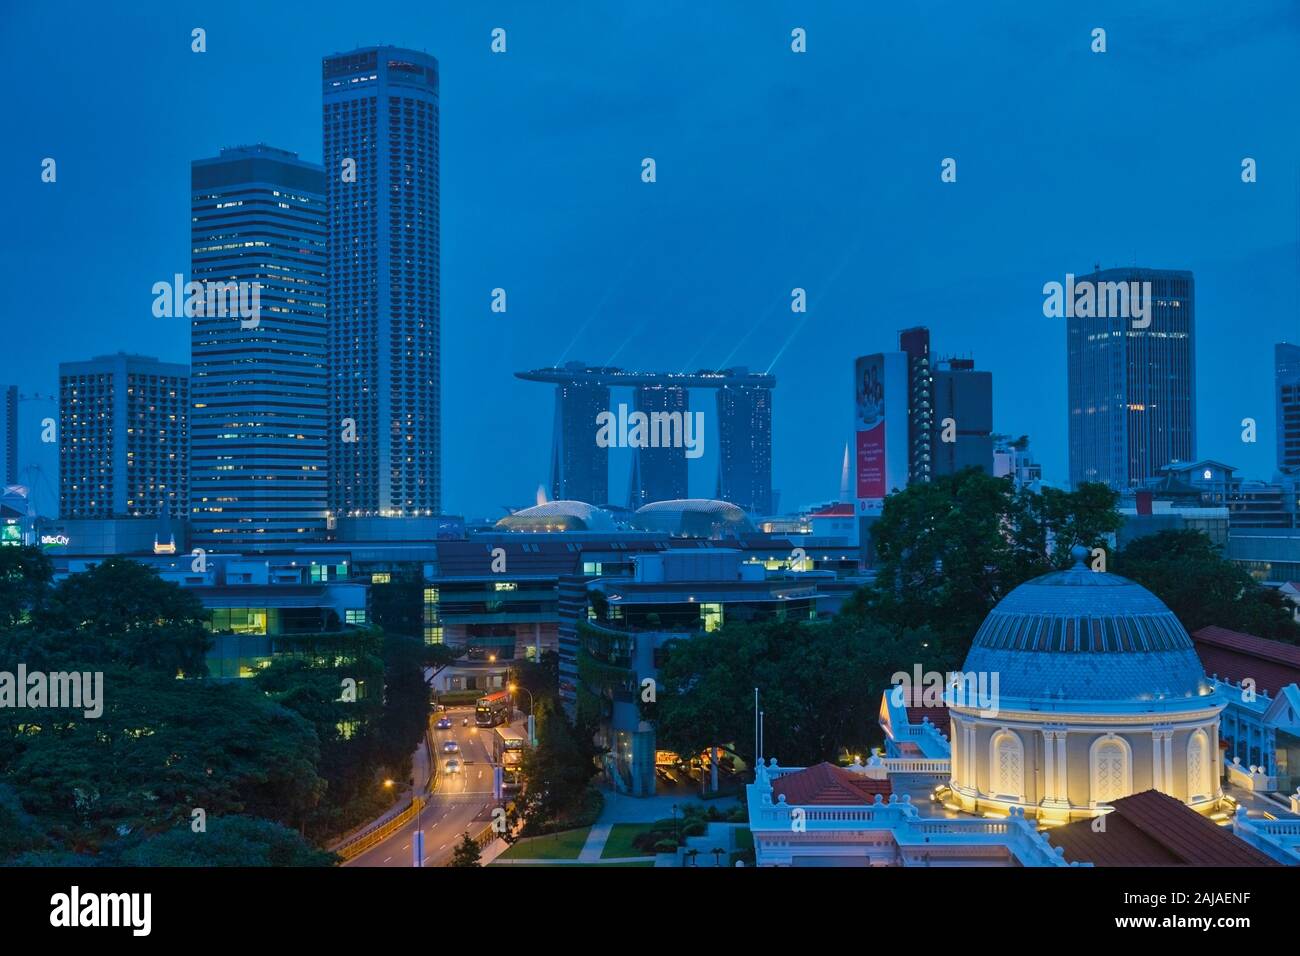 Scena notturna di Singapore. Alta vista complessiva, città di Singapore. Le tre torri a metà distanza appartengono al Marina Bay Sands Hotel e Skypark. Foto Stock